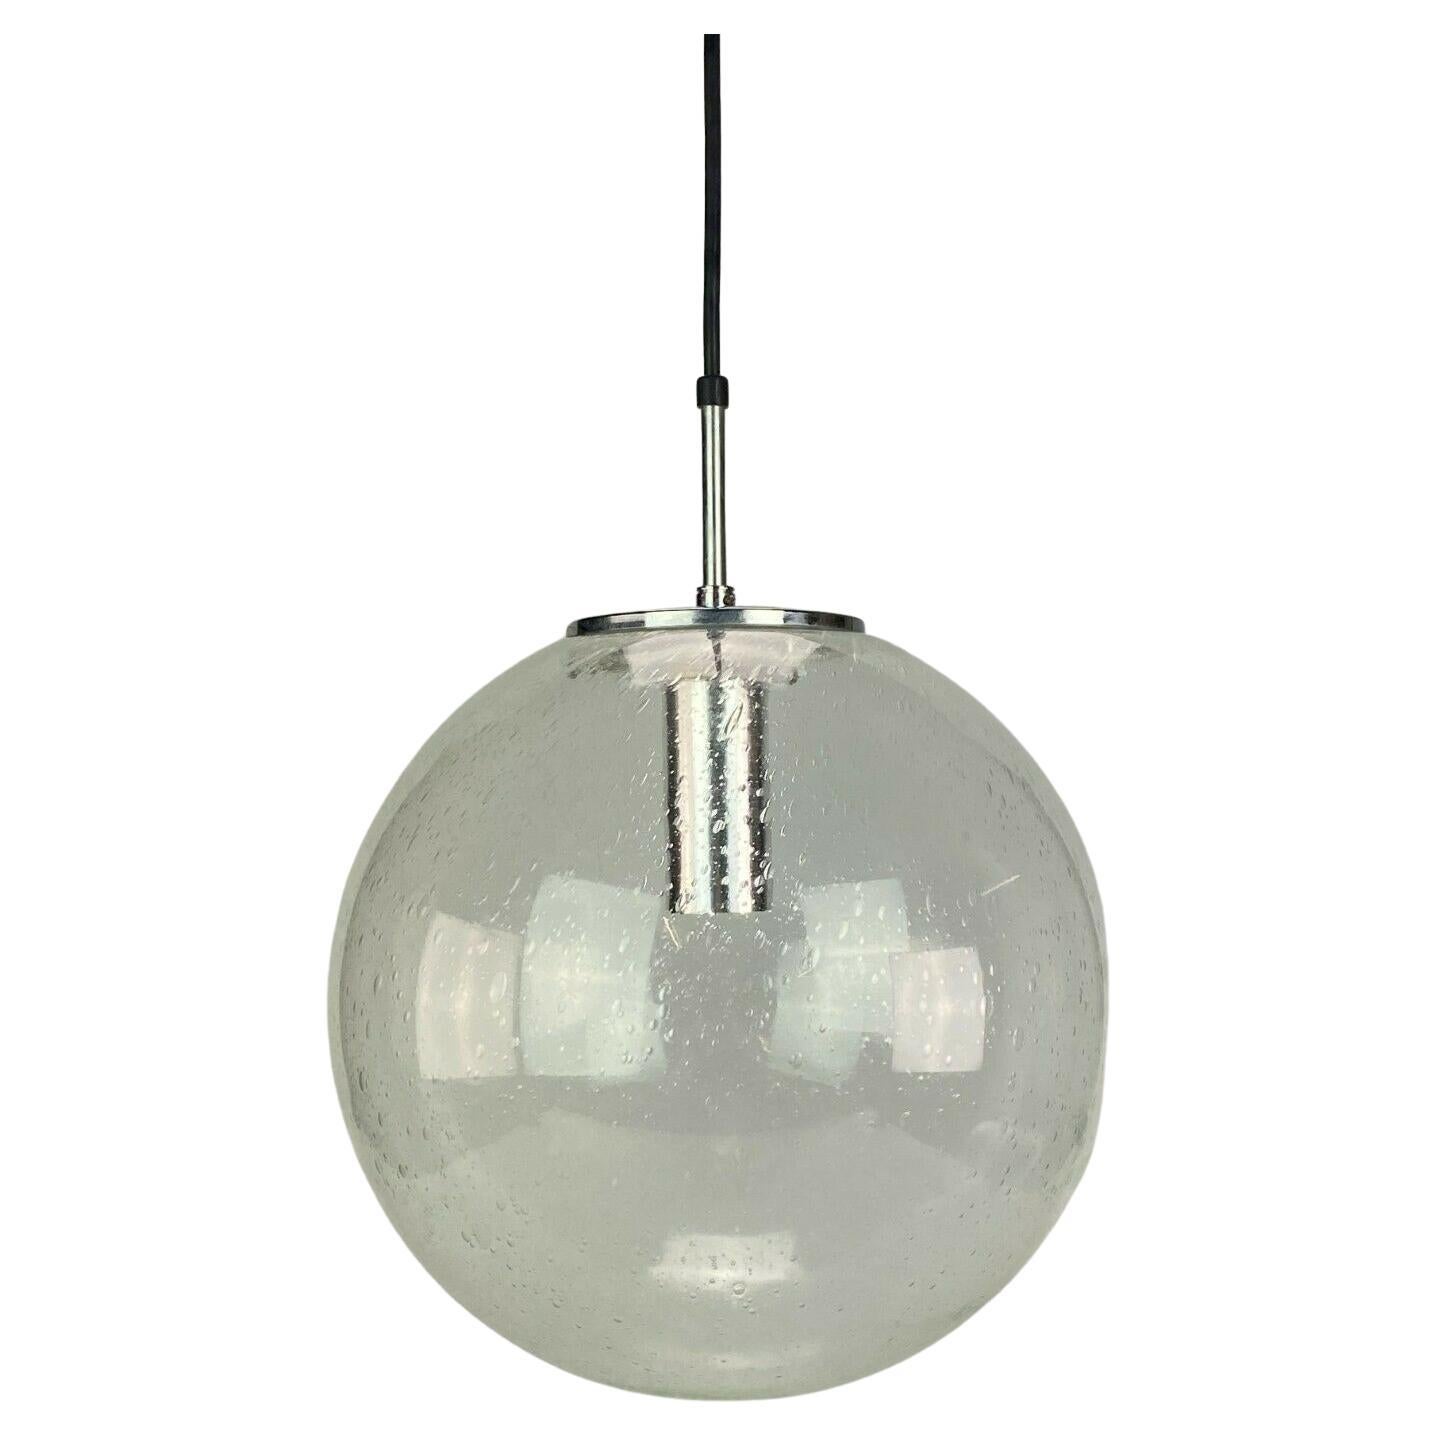 Plafonnier XL des années 60 et 70 Lampe de plafond Limburg Spherical Lamp Ball Design 